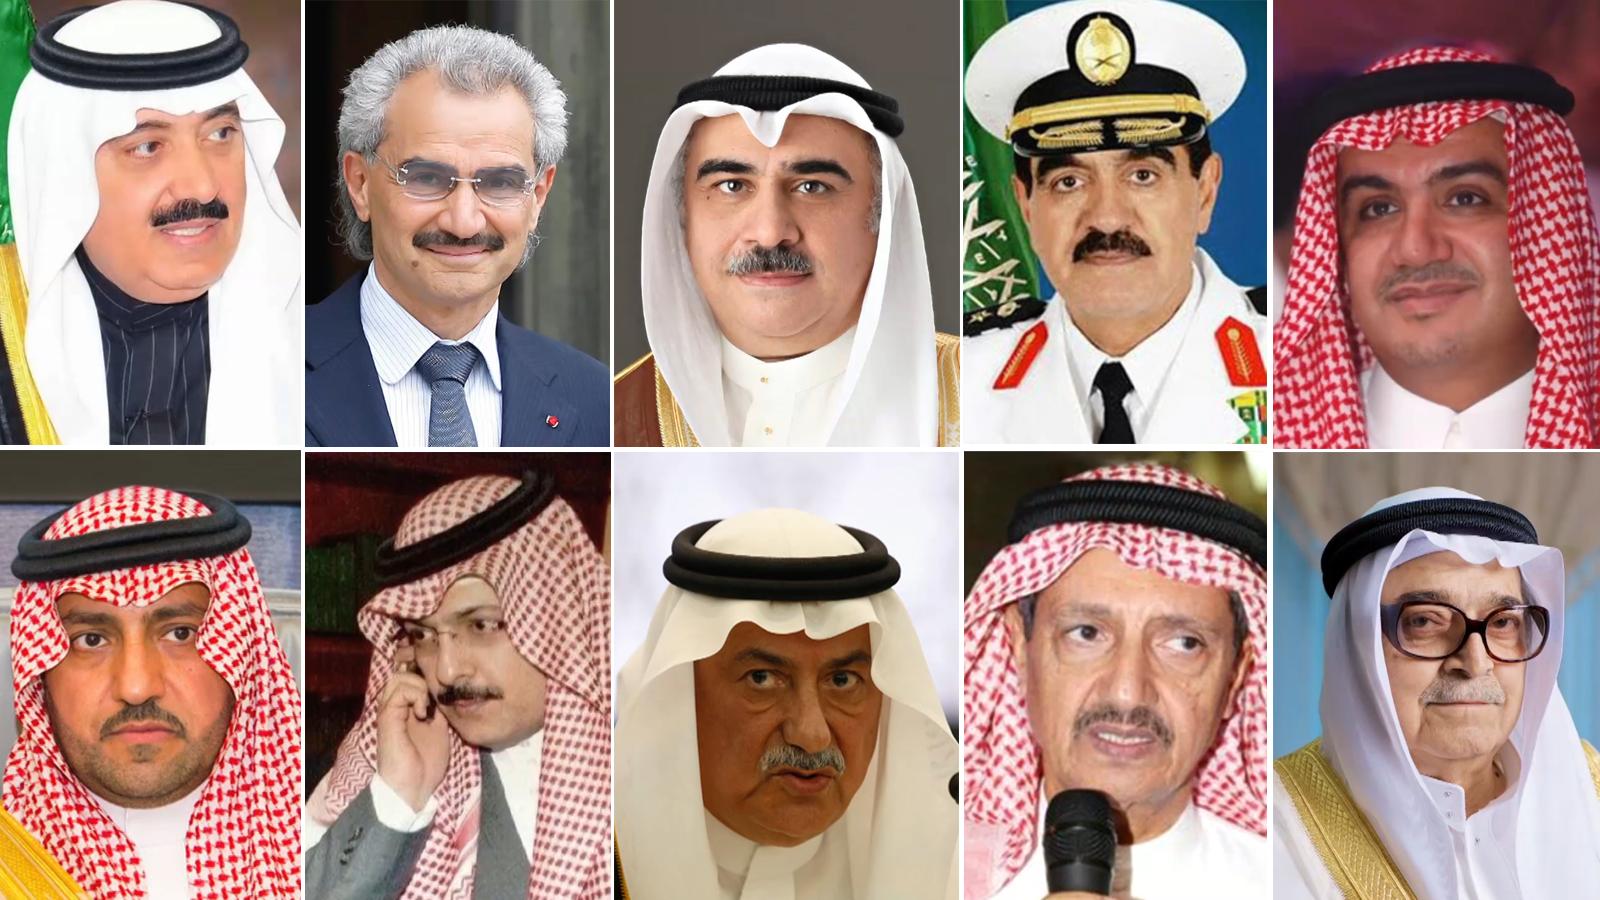   بالتفاصيل: بيان جديد للنائب العام السعودي عن تسويات الأمراء المحتجزين